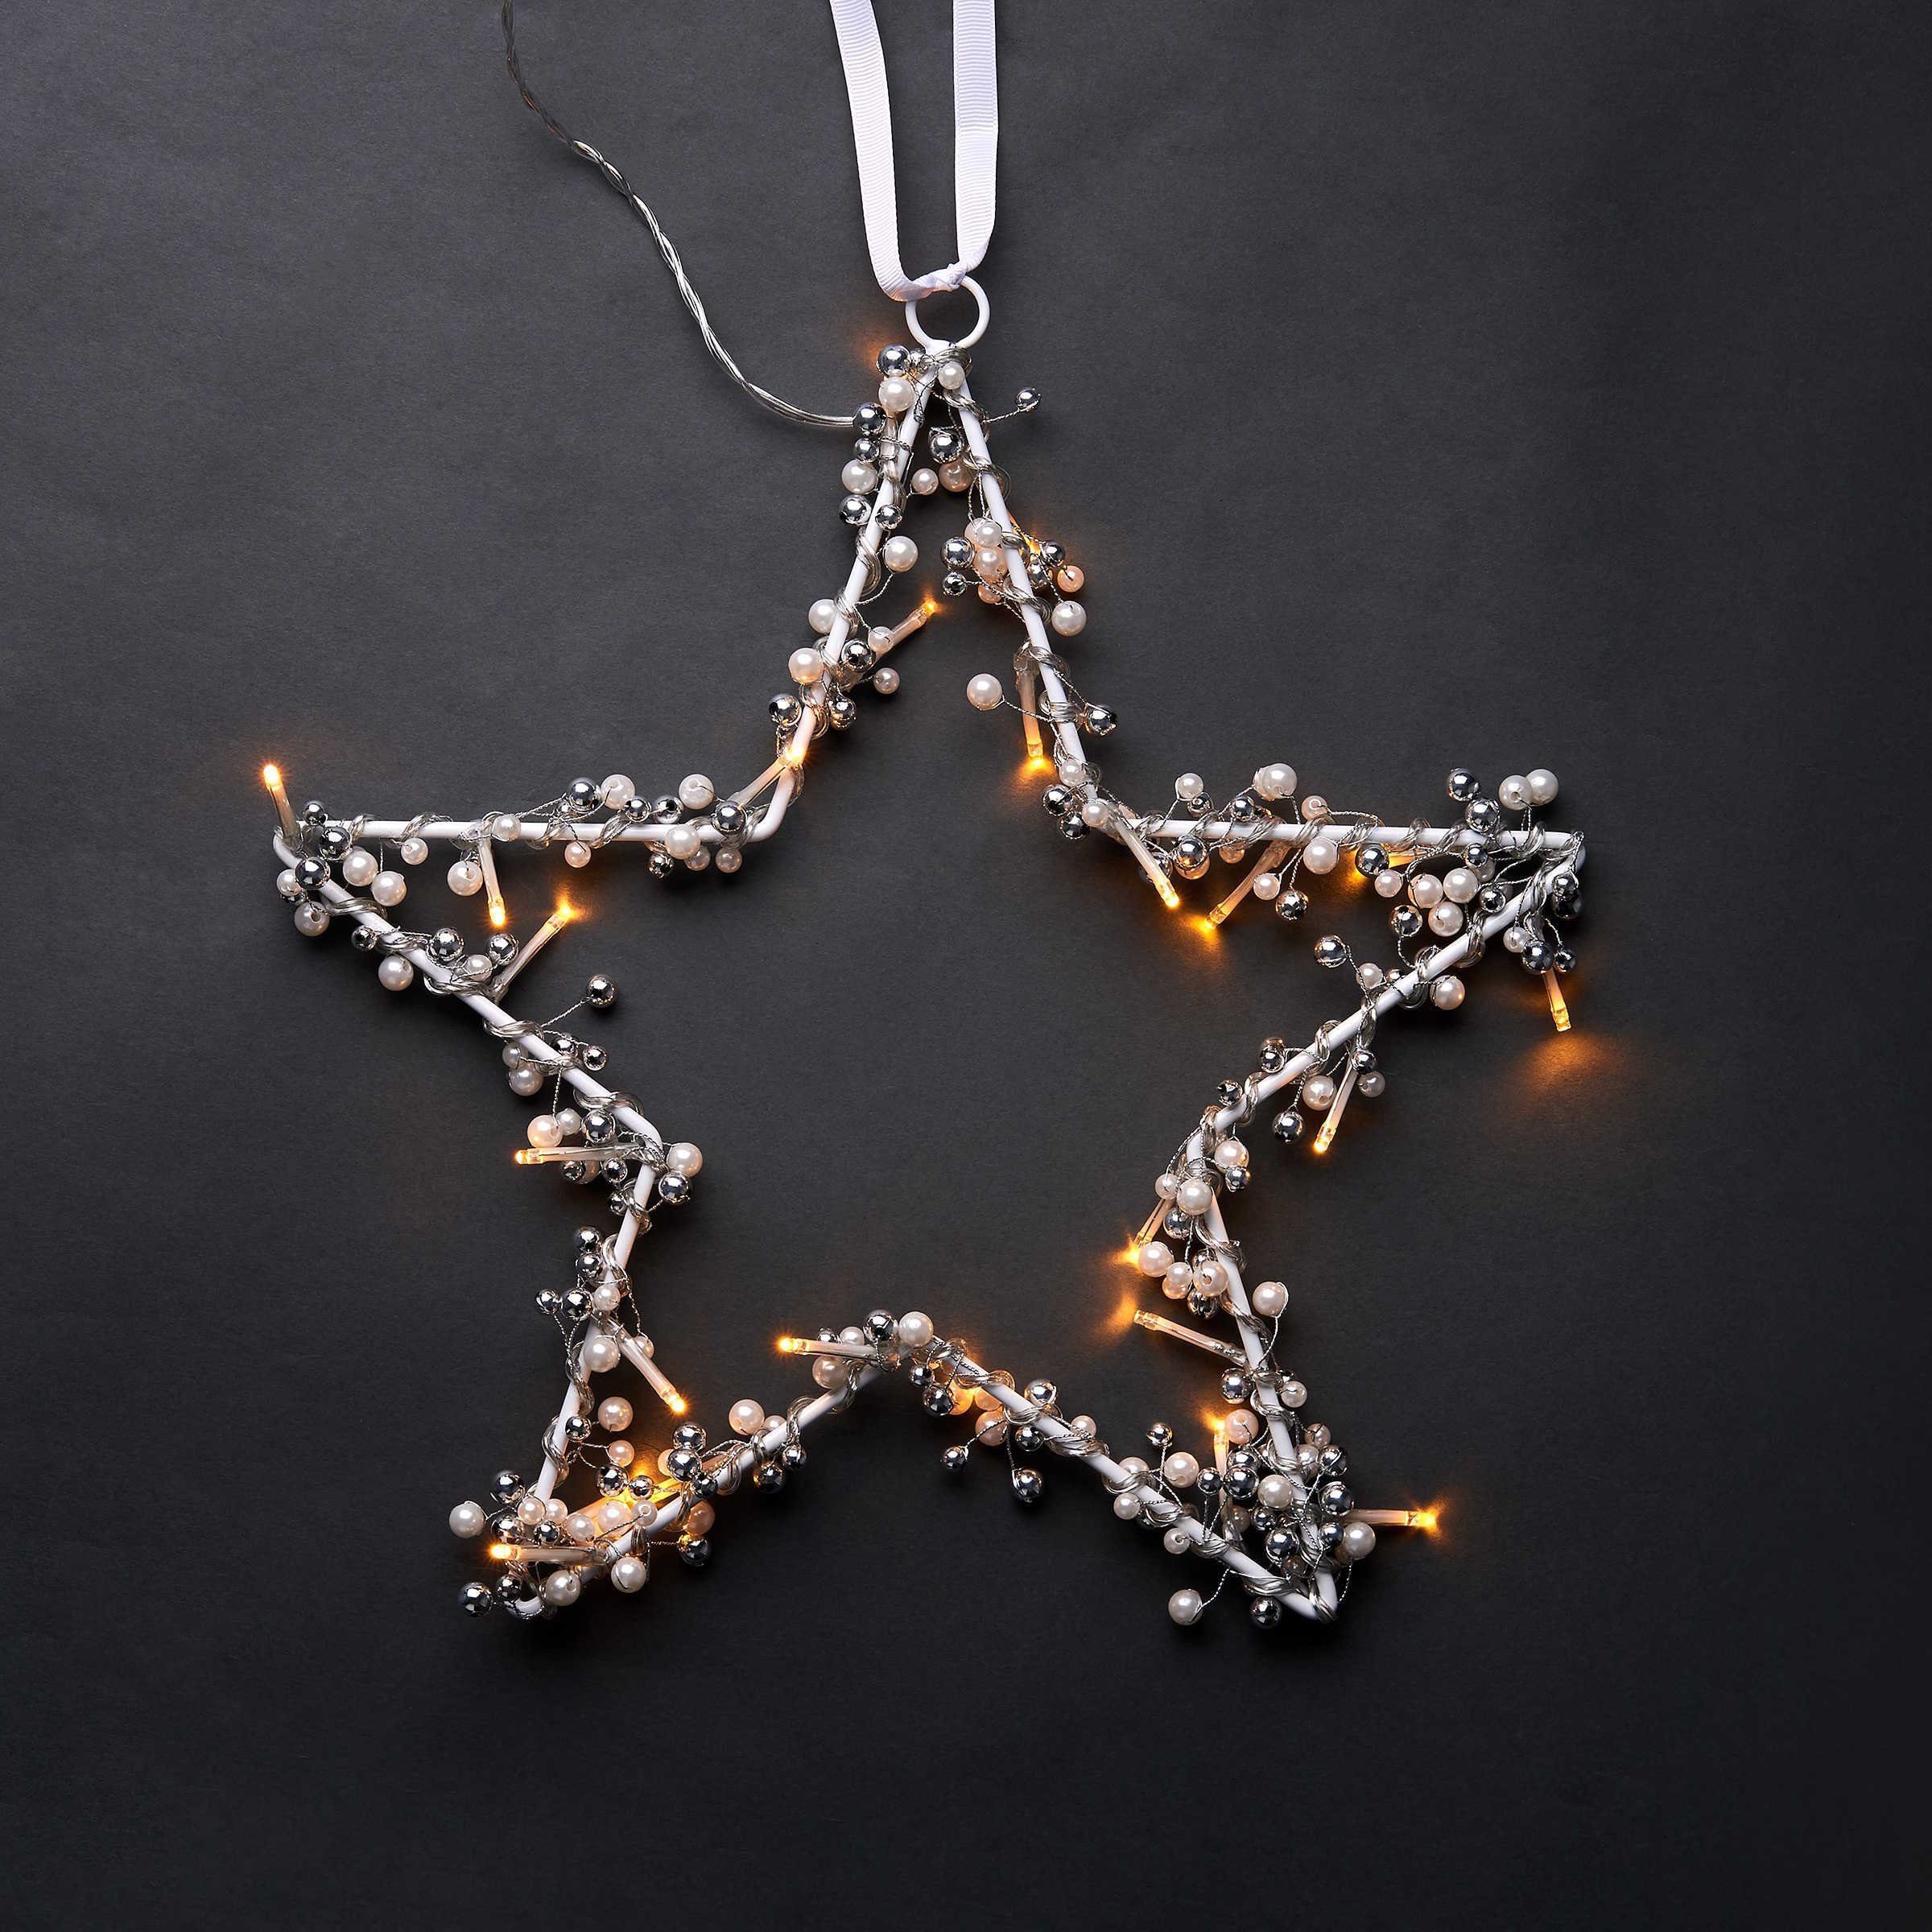 BUTLERS Hänge-Weihnachtsbaum STAR LIGHTS LED-Stern mit USB